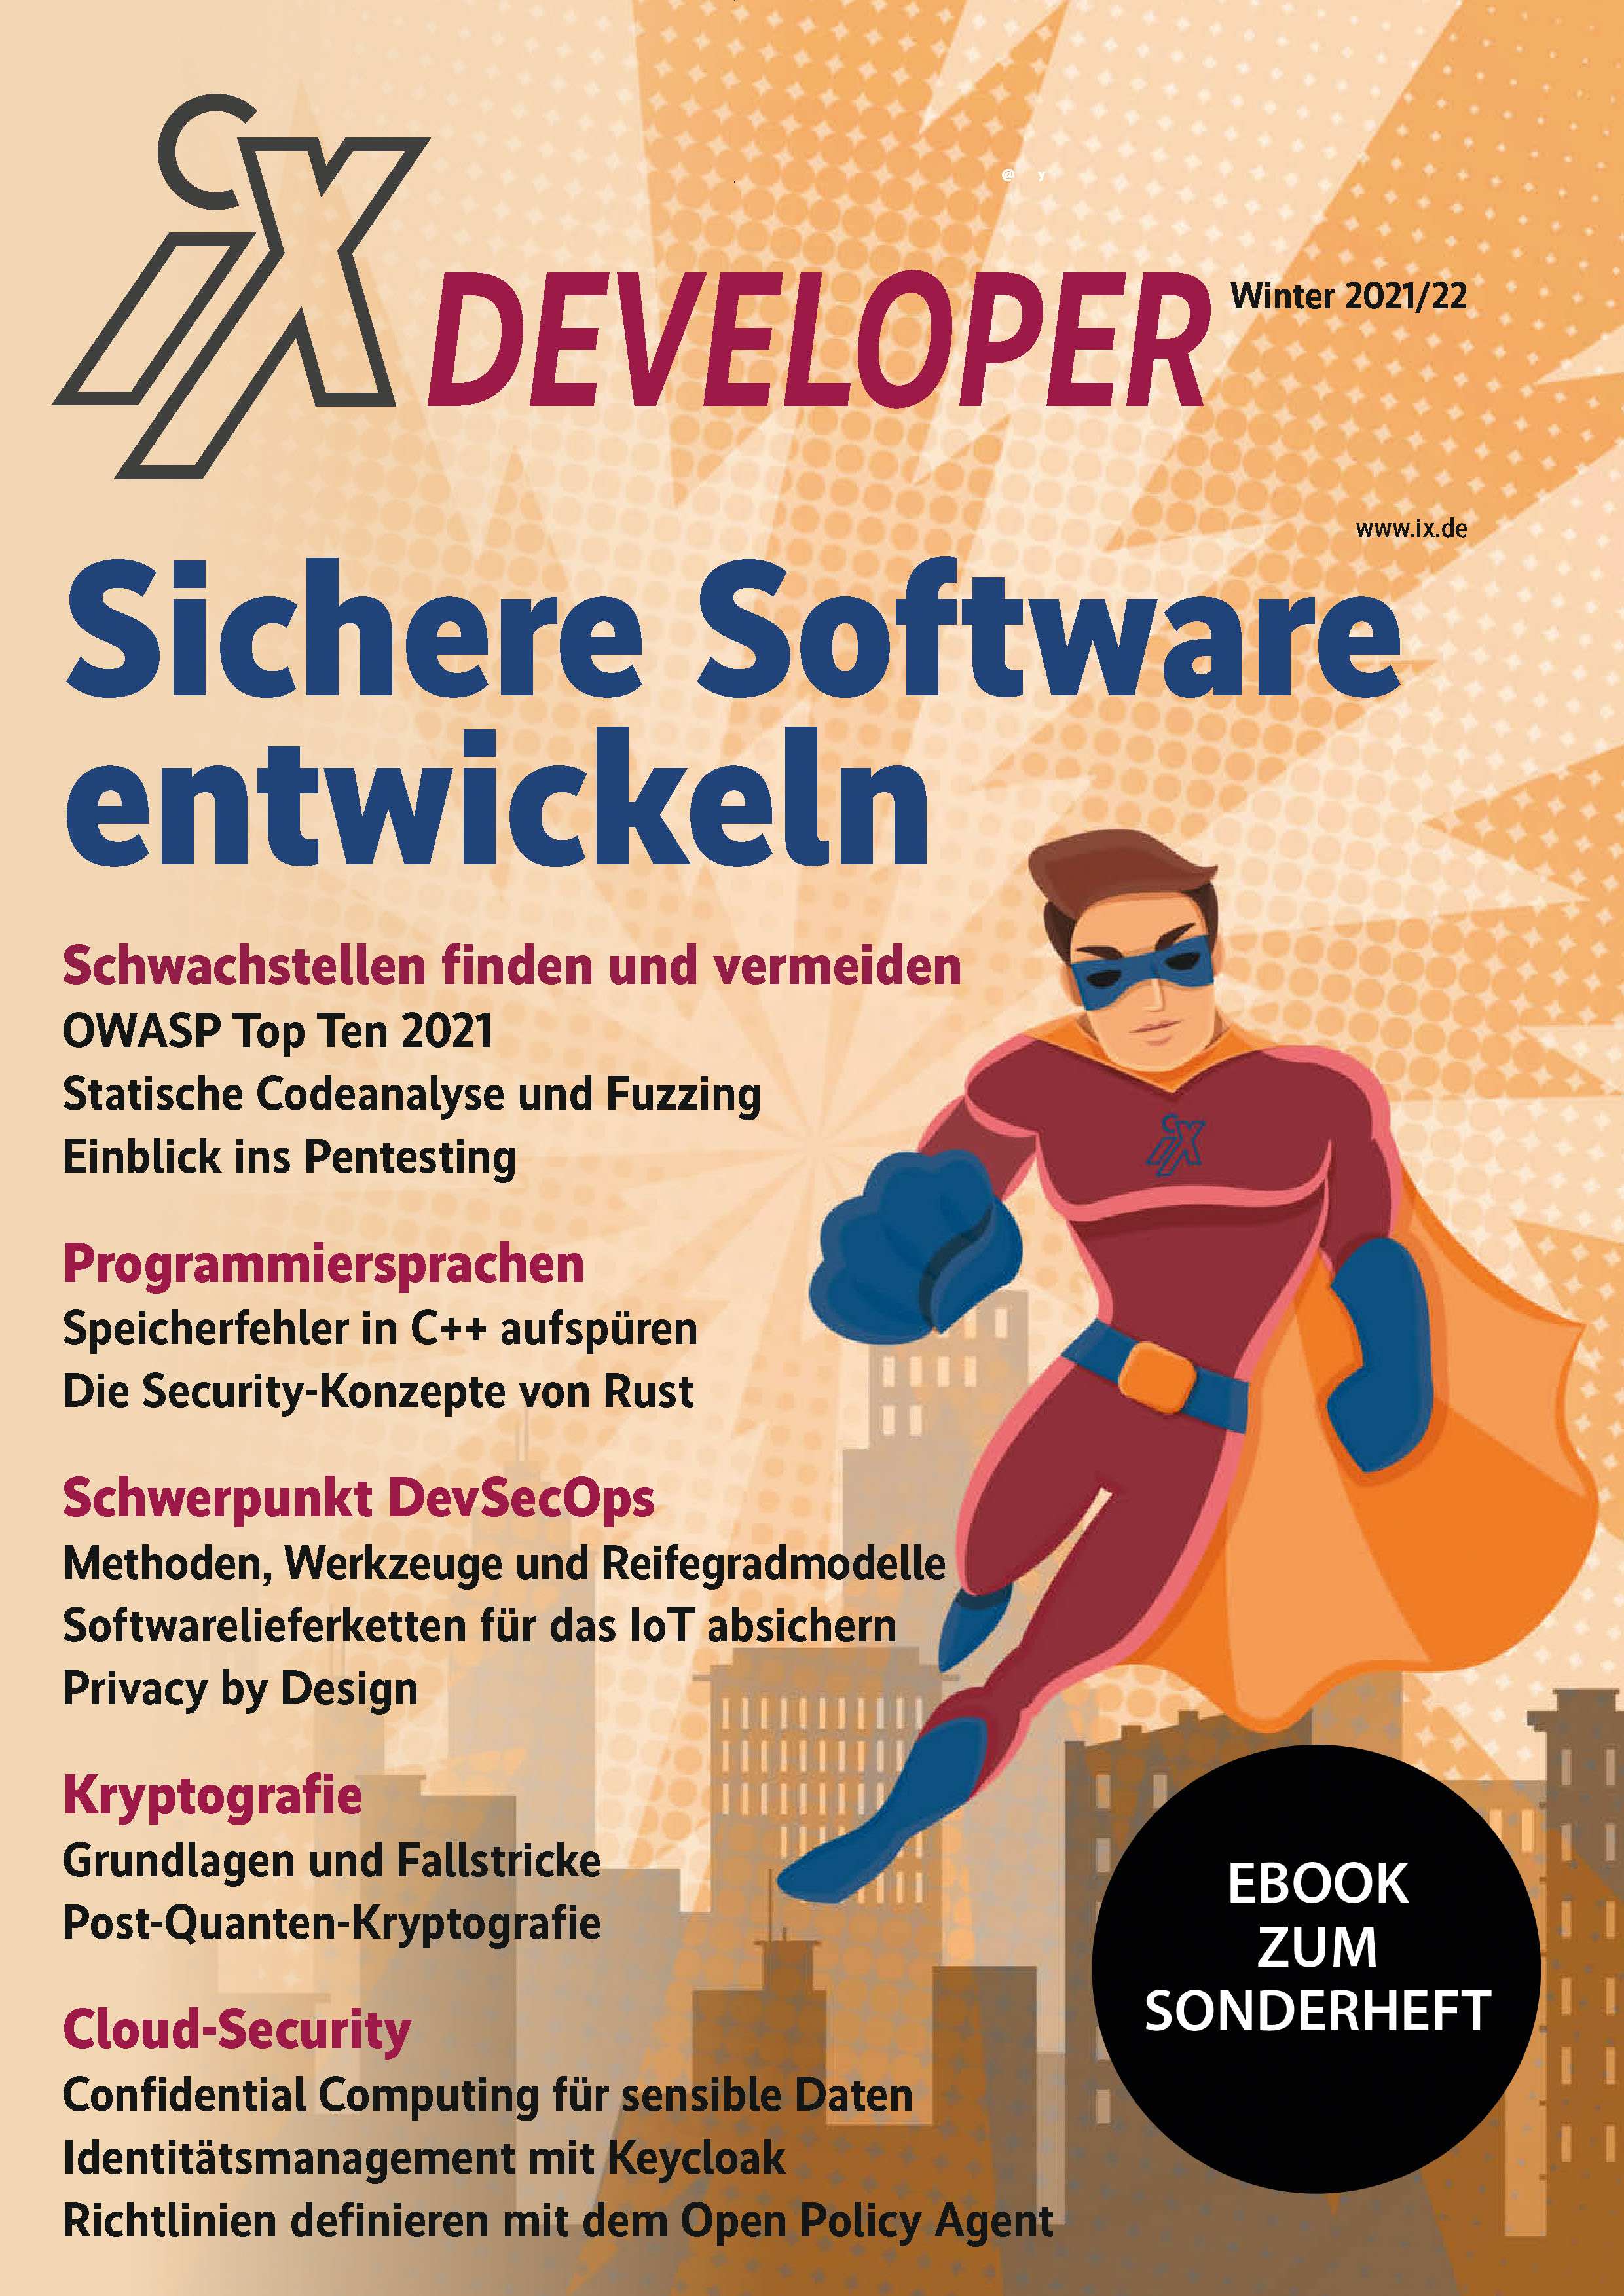 iX Developer Sichere Software entwickeln 2021 (eBook zum Sonderheft)